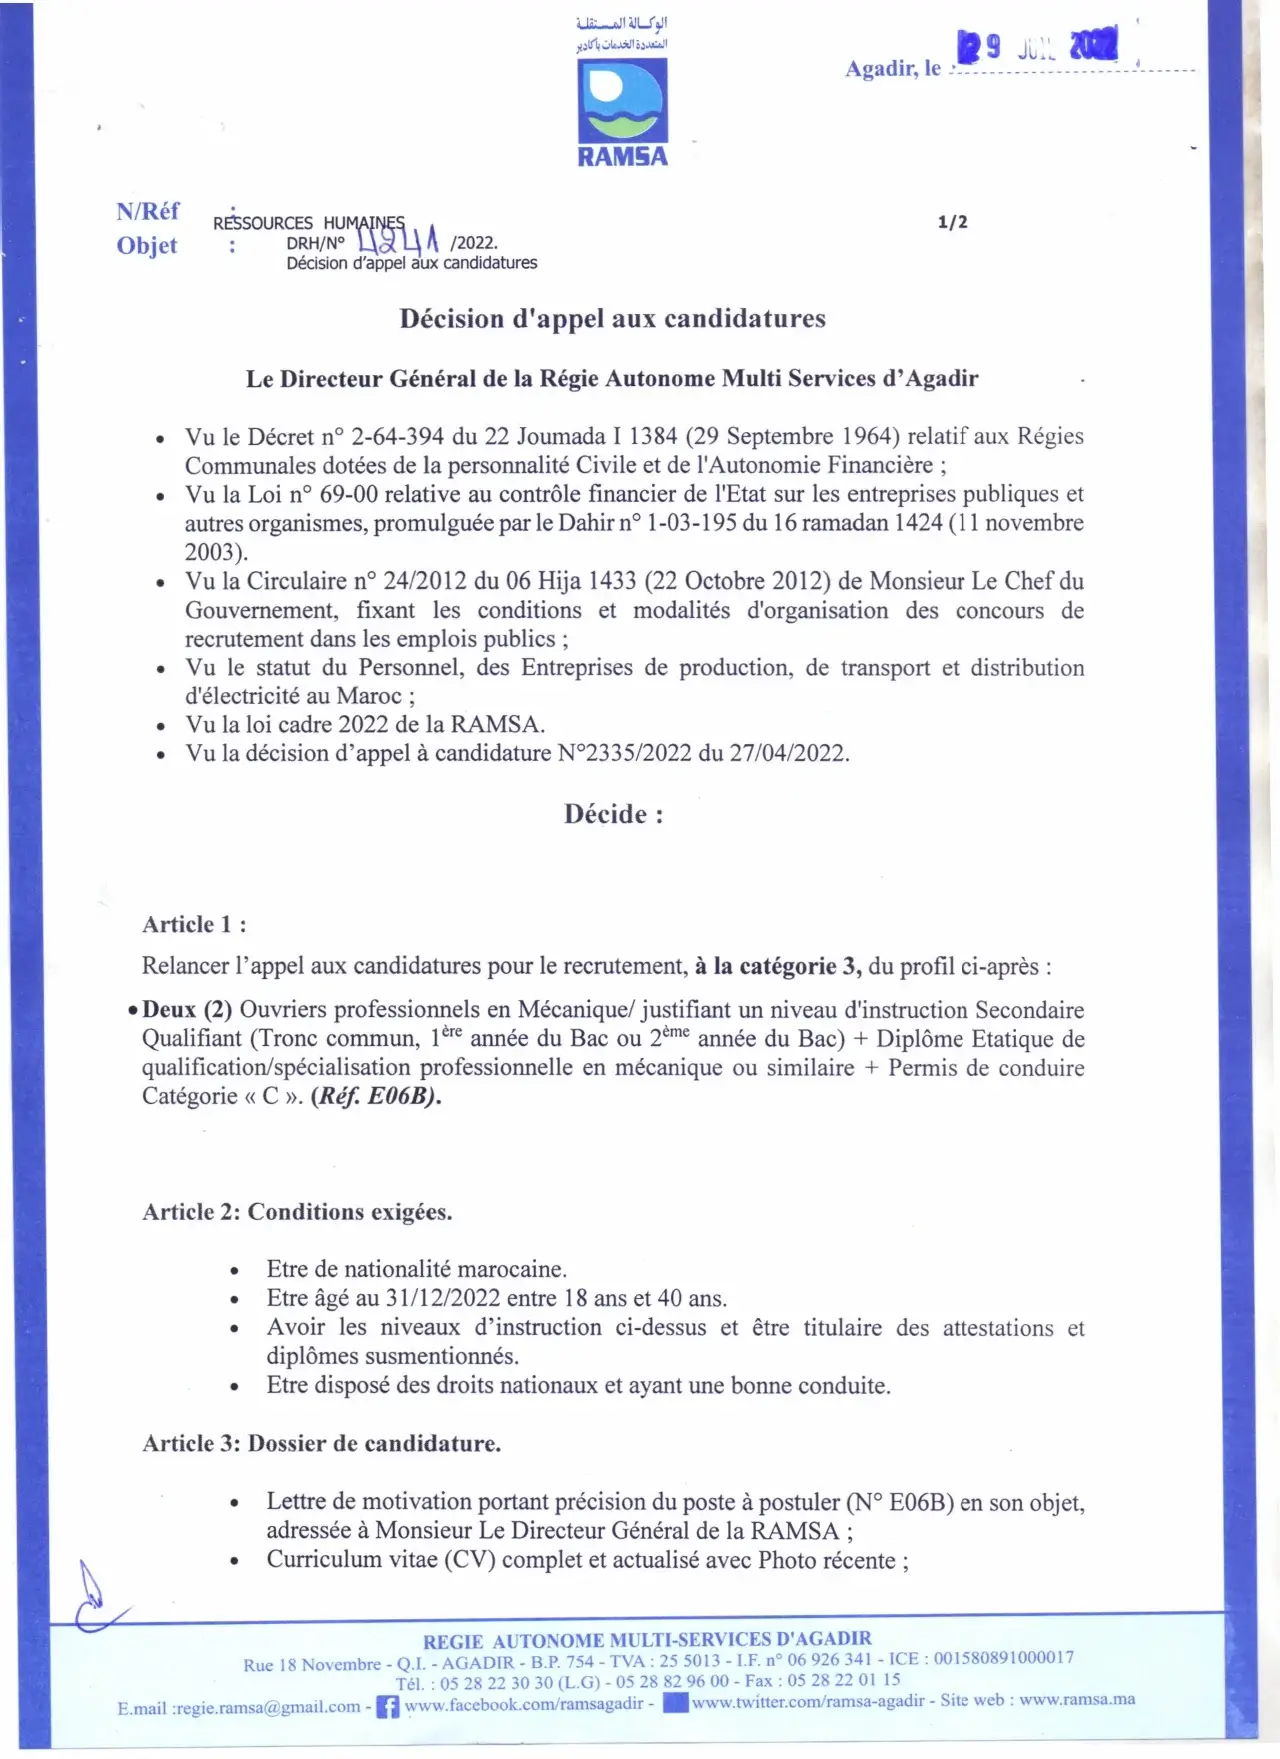 Concours de recrutement RAMSA Agadir 2022